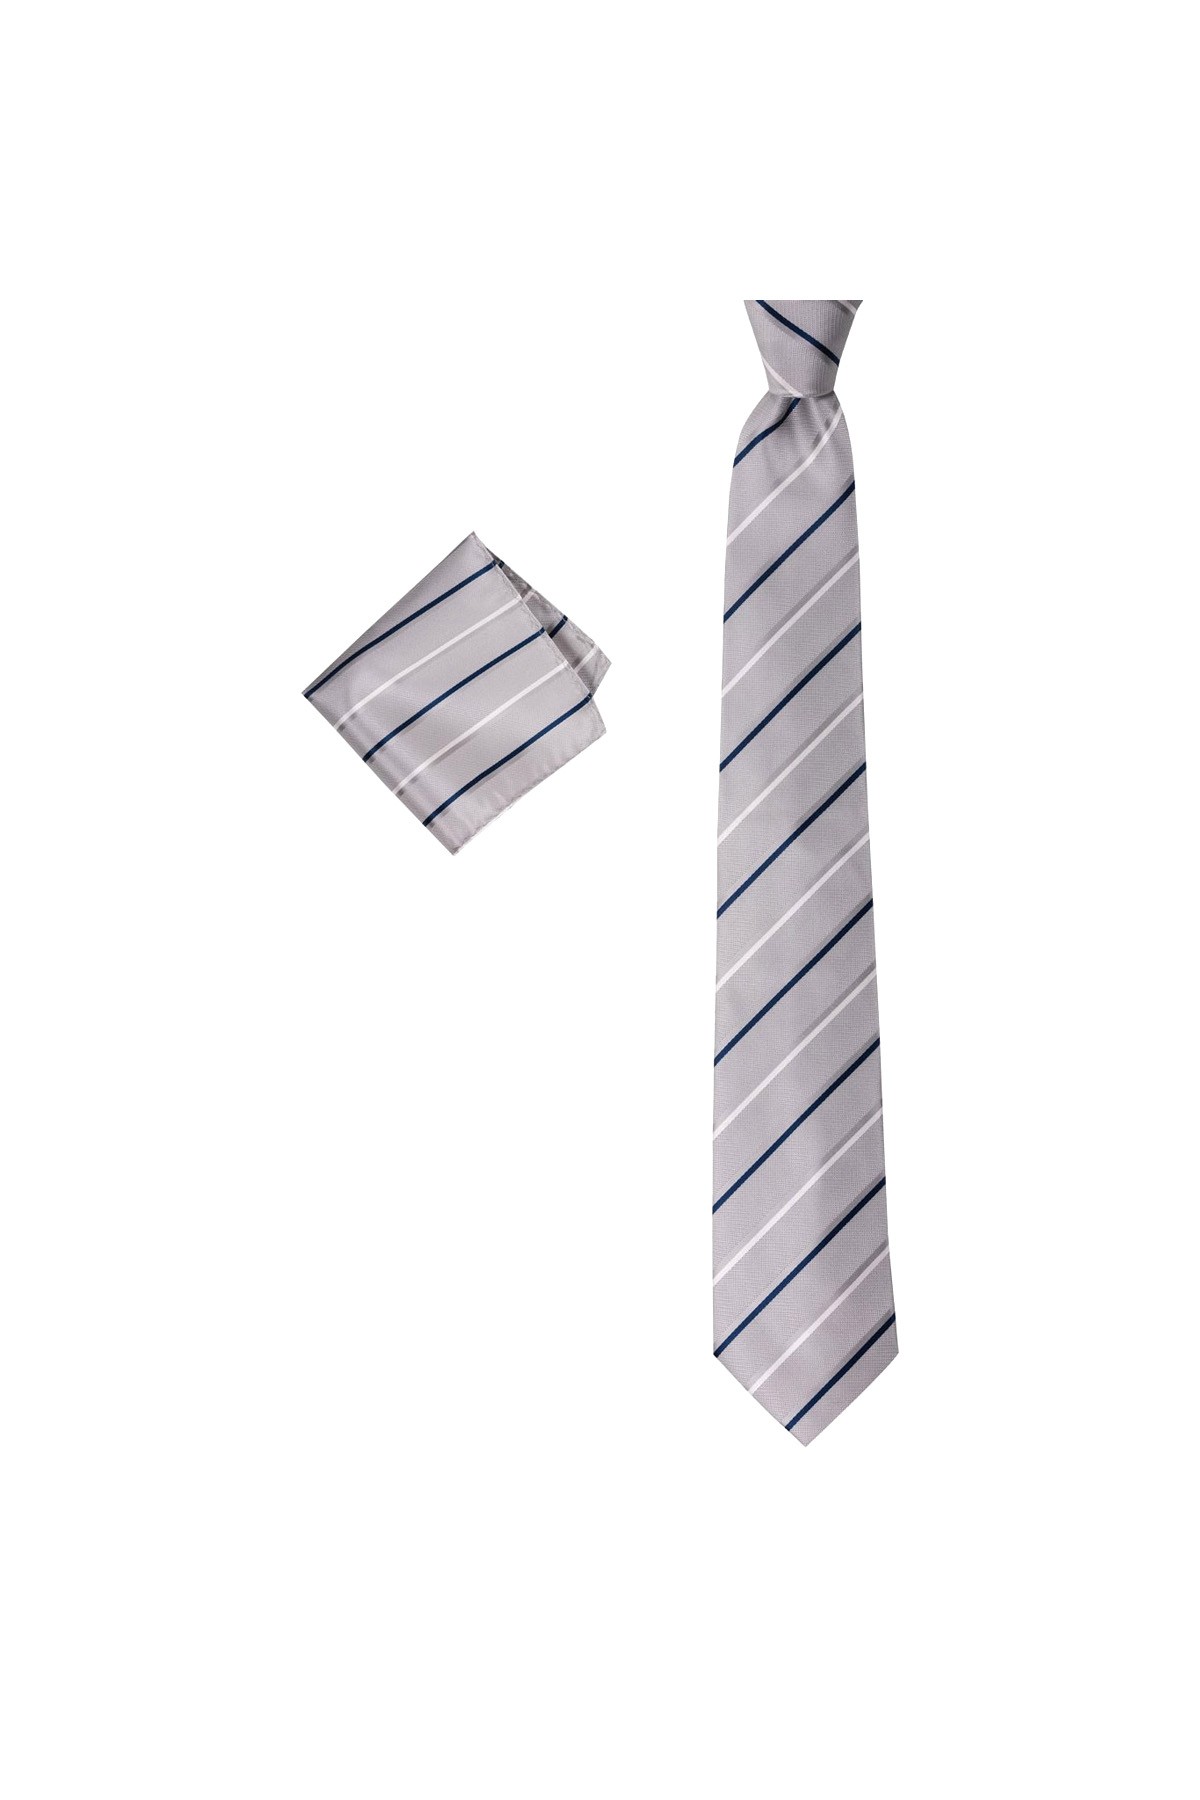 Çok çizgili 8 cm genişliğinde mendilli kravat